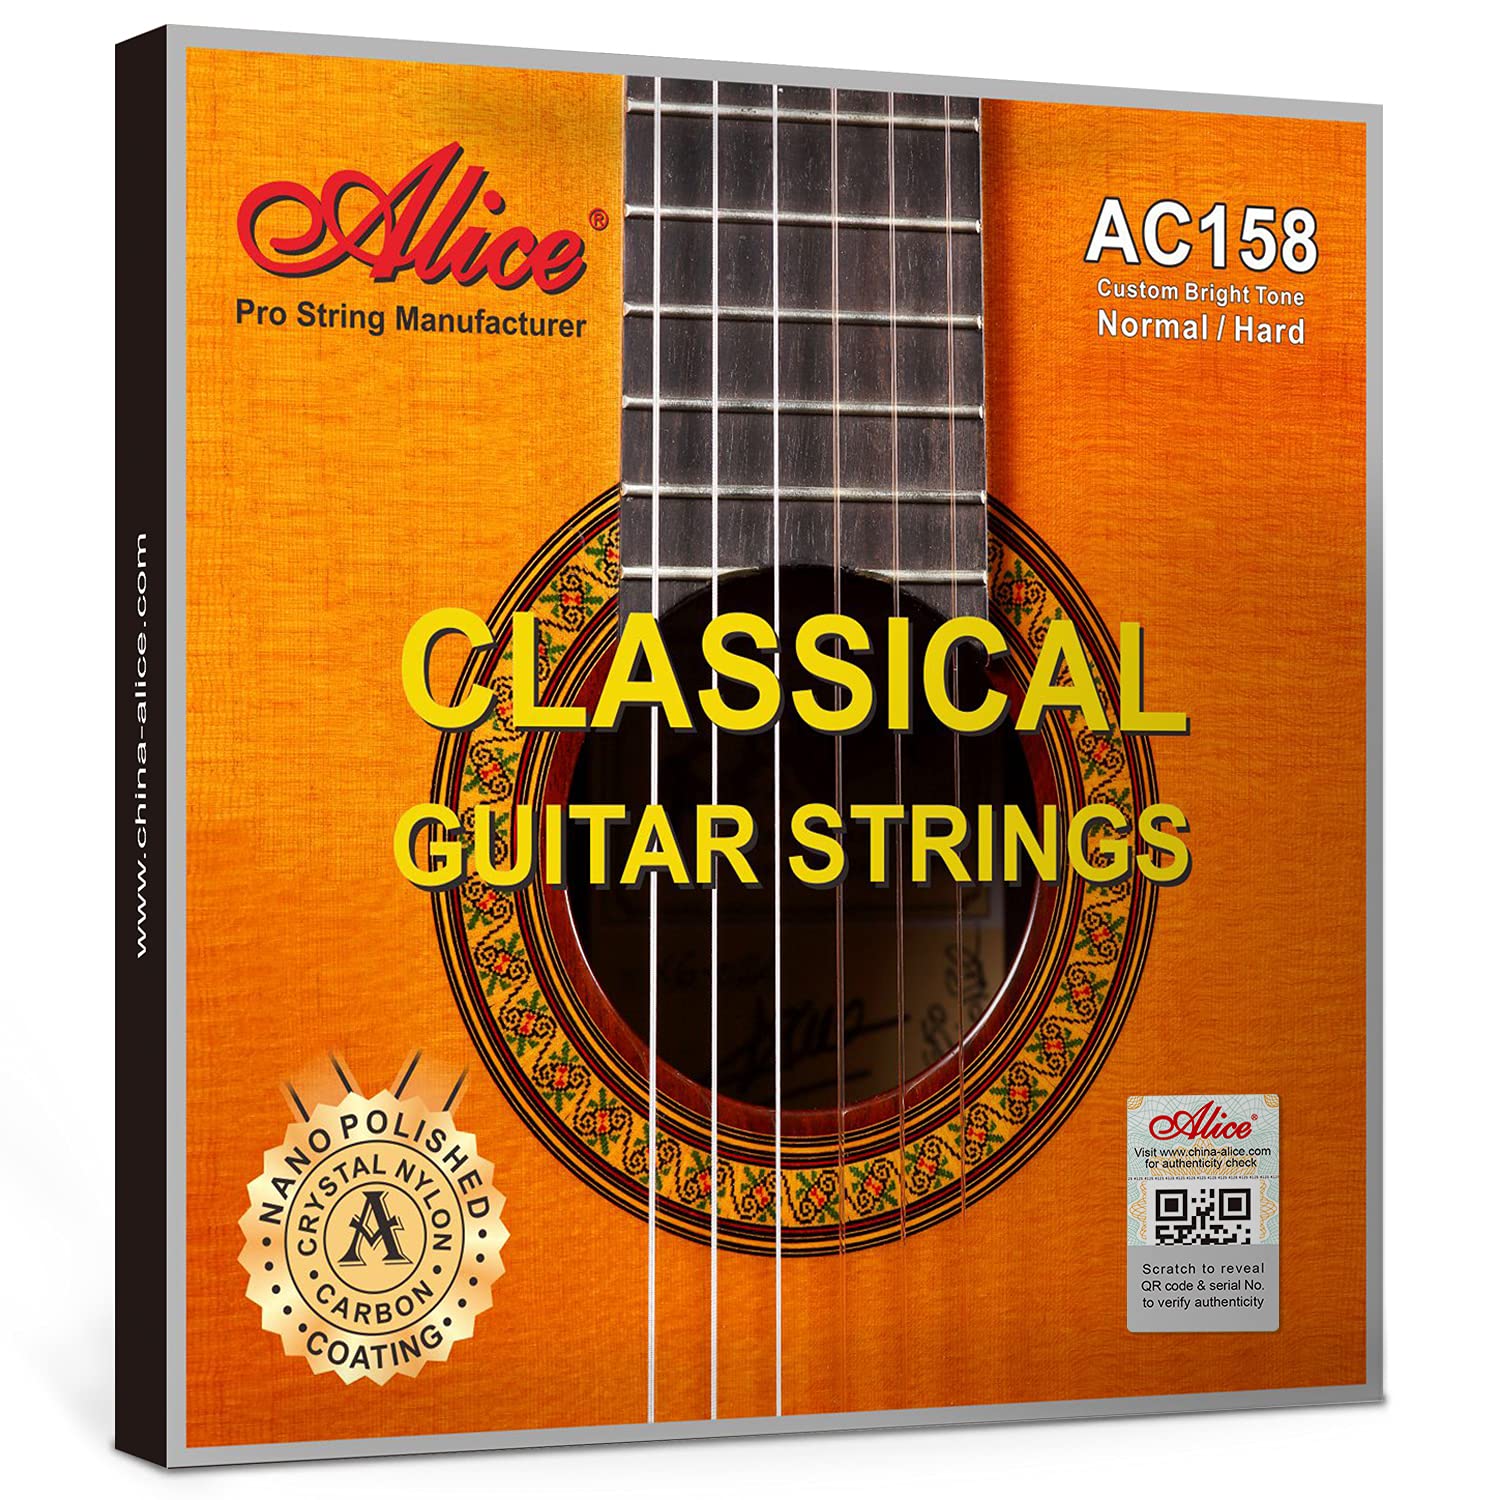 Bộ dây đàn guitar classic Alice AC158 dây guitar nilon Cao cấp dành cho guitar cổ điển - Duy Guitar Store